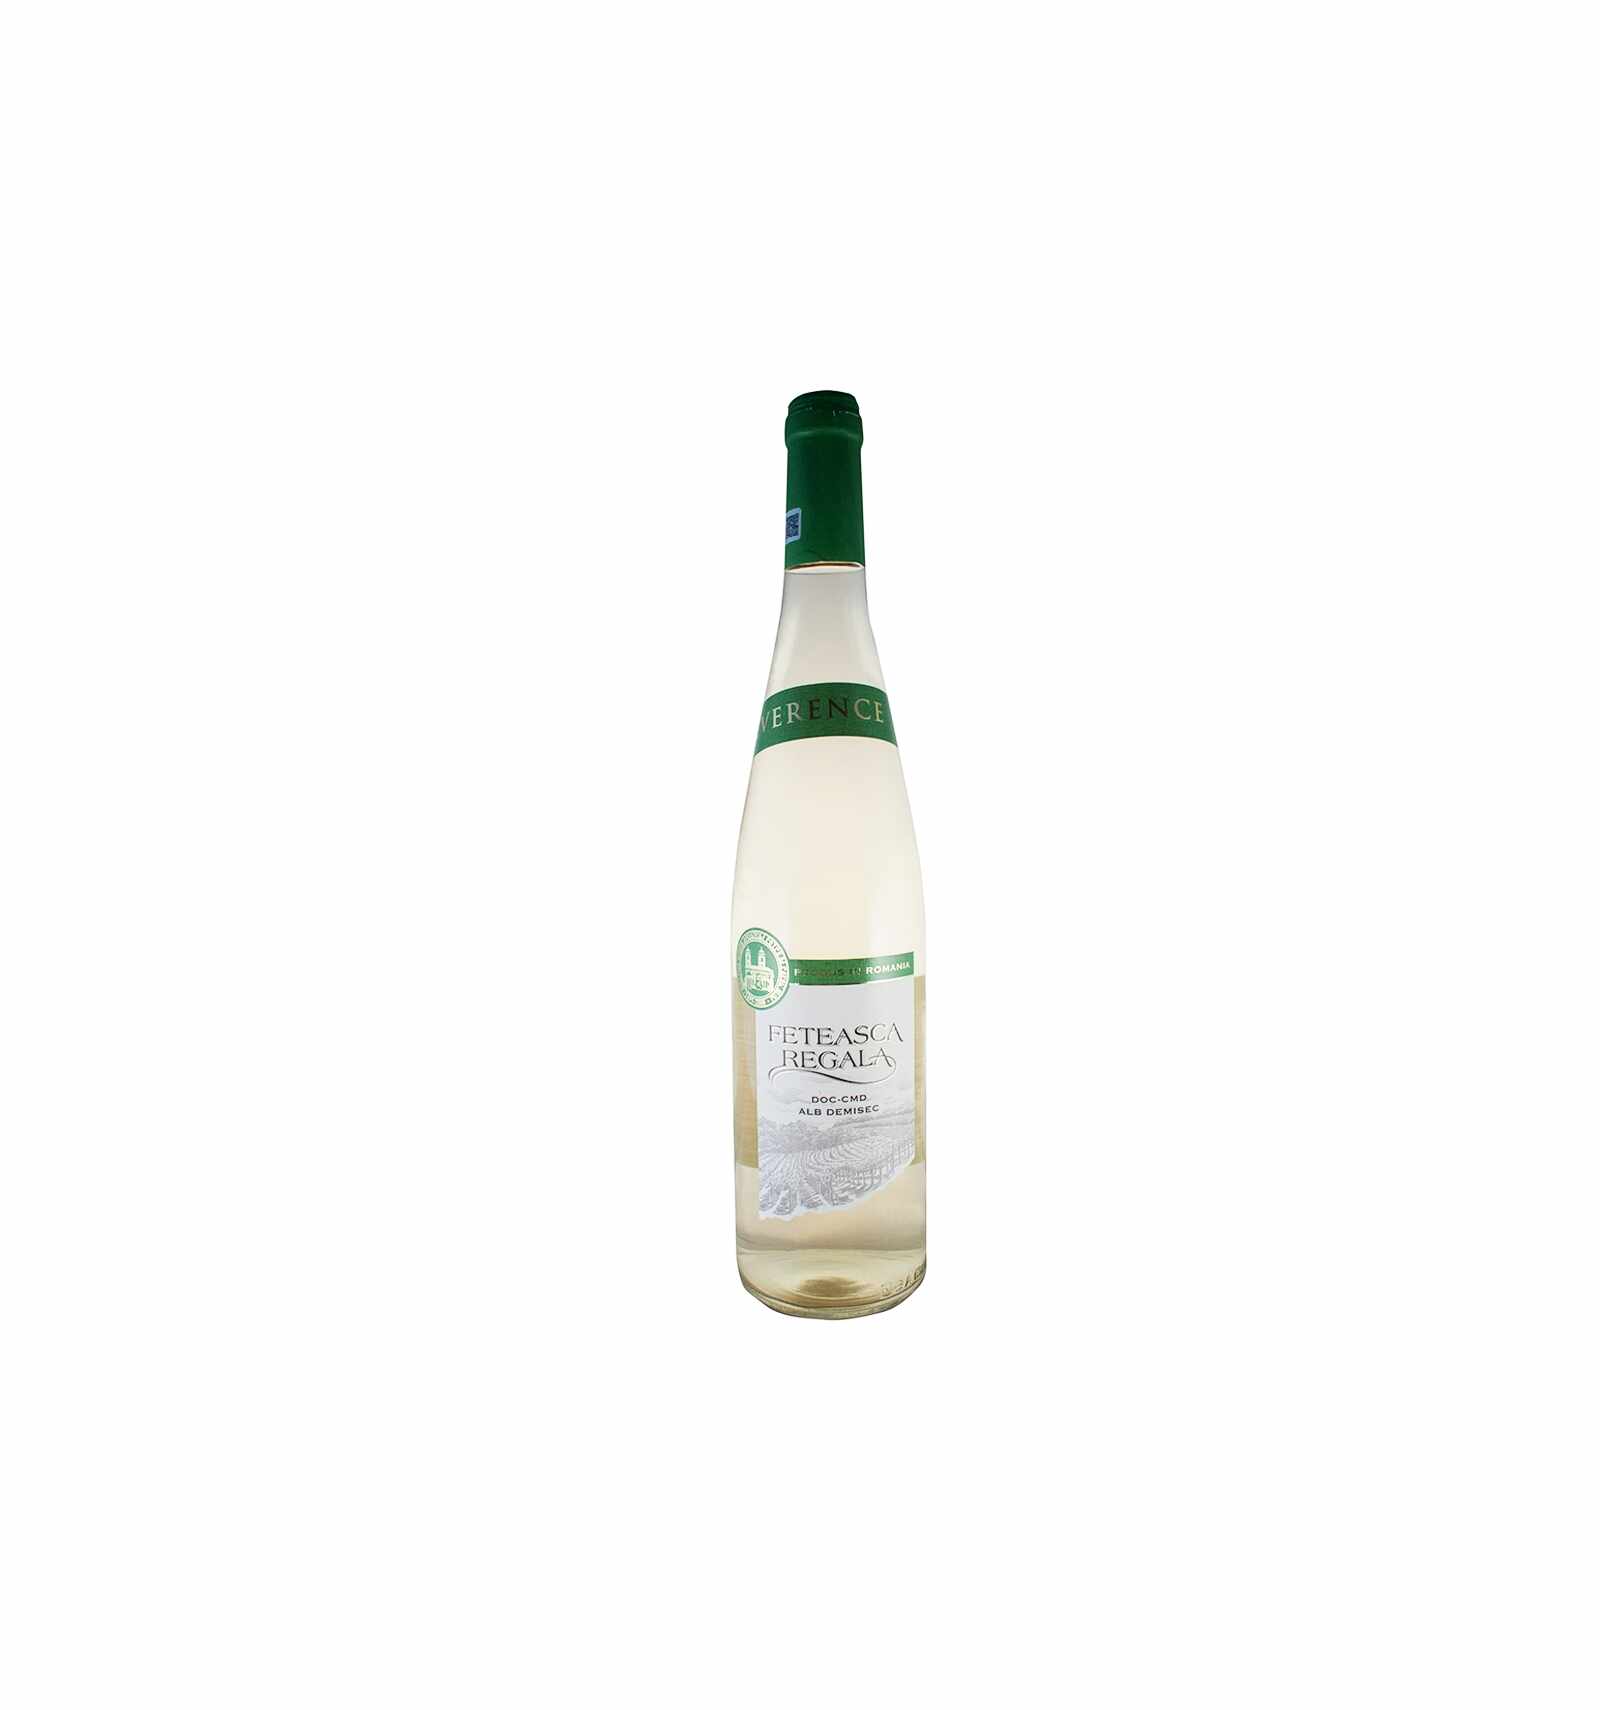 Vin alb, Feteasca Regala, Reverence, 13% alc., 0.75L, Romania